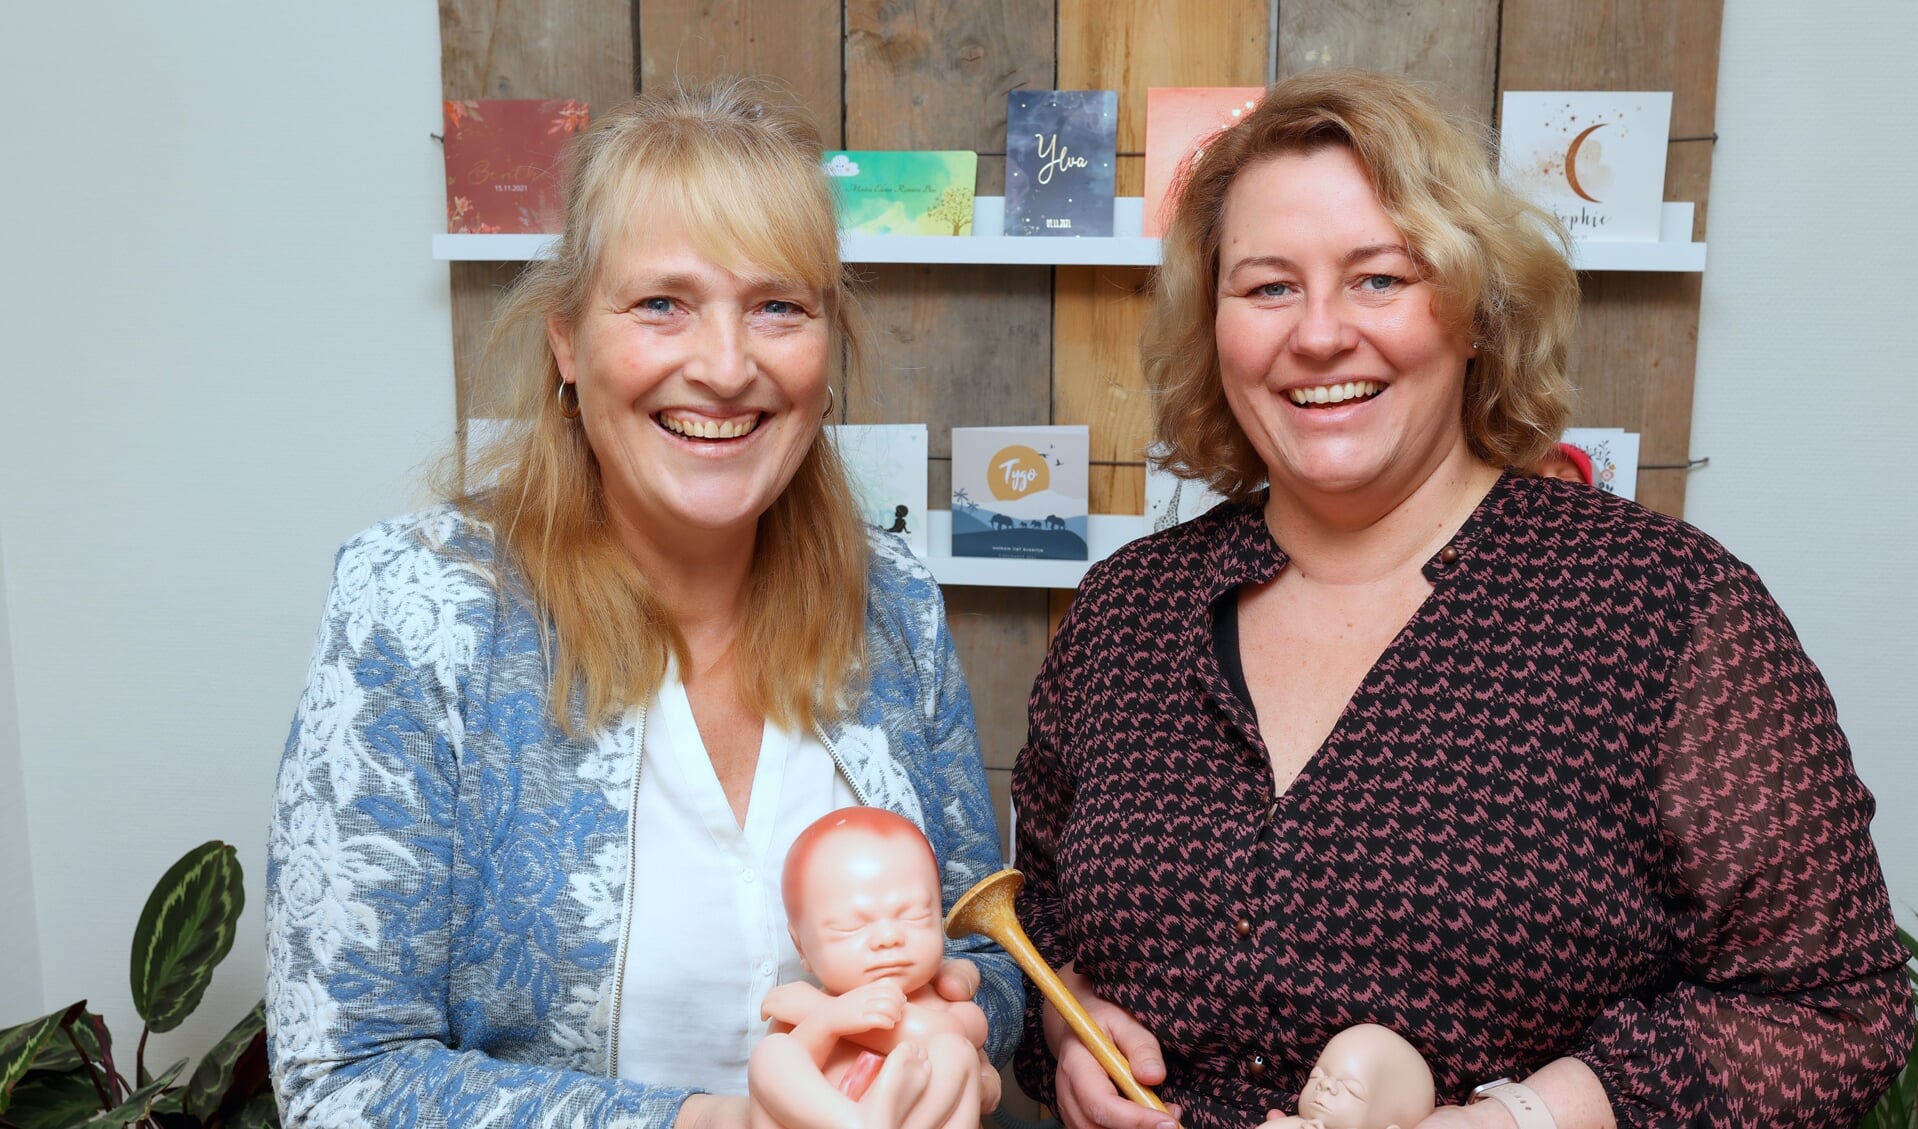 Verloskundigen Gemma en Mariska: "De eerste week na de bevalling word je geleefd."